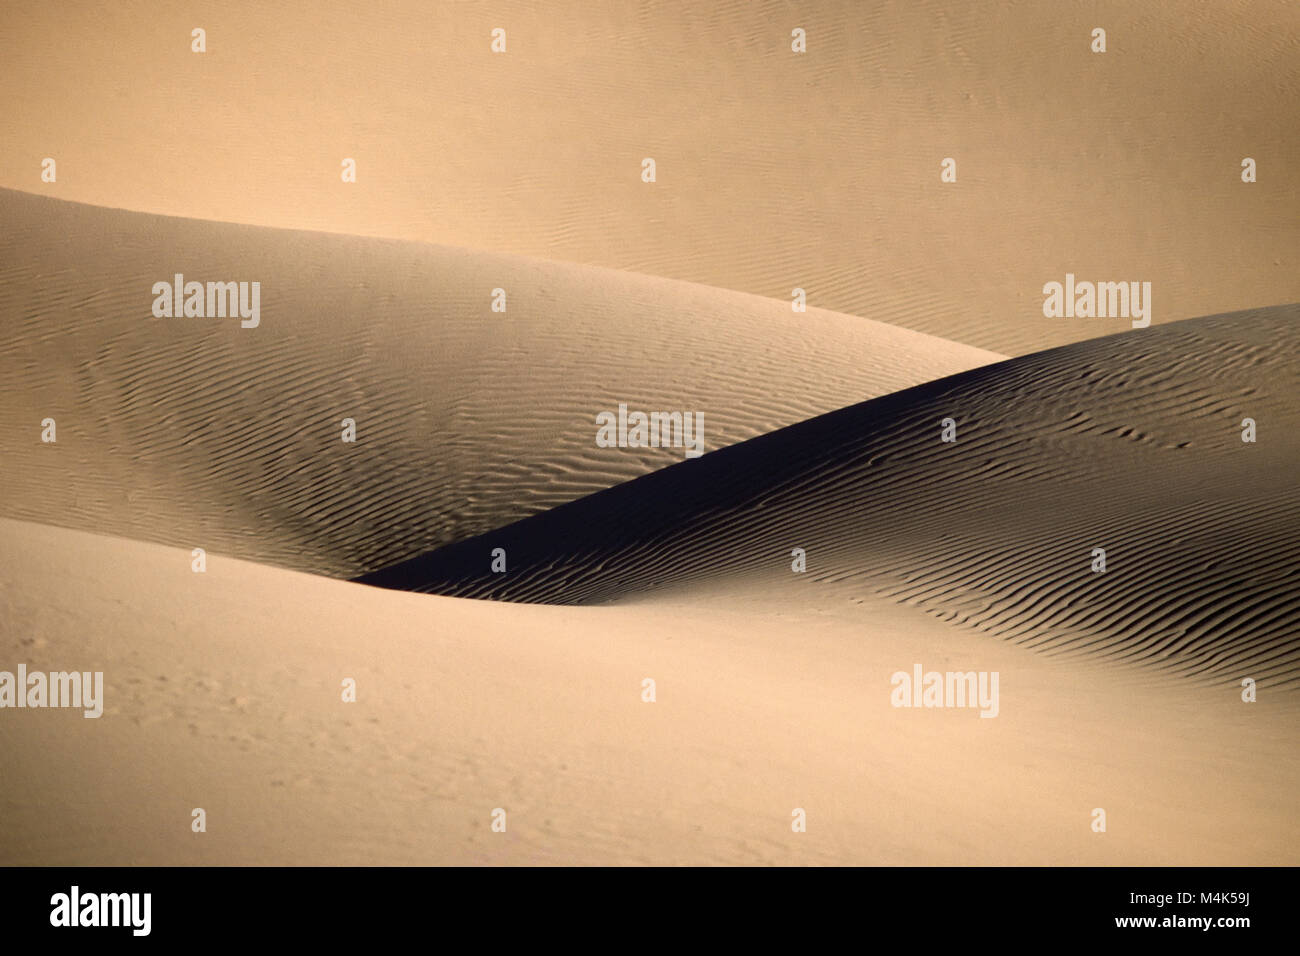 In Algeria. Kerzaz. Western mare di sabbia. Grand Erg Occidental. Deserto del Sahara. Chiudere fino dune di sabbia e di ombra. Foto Stock